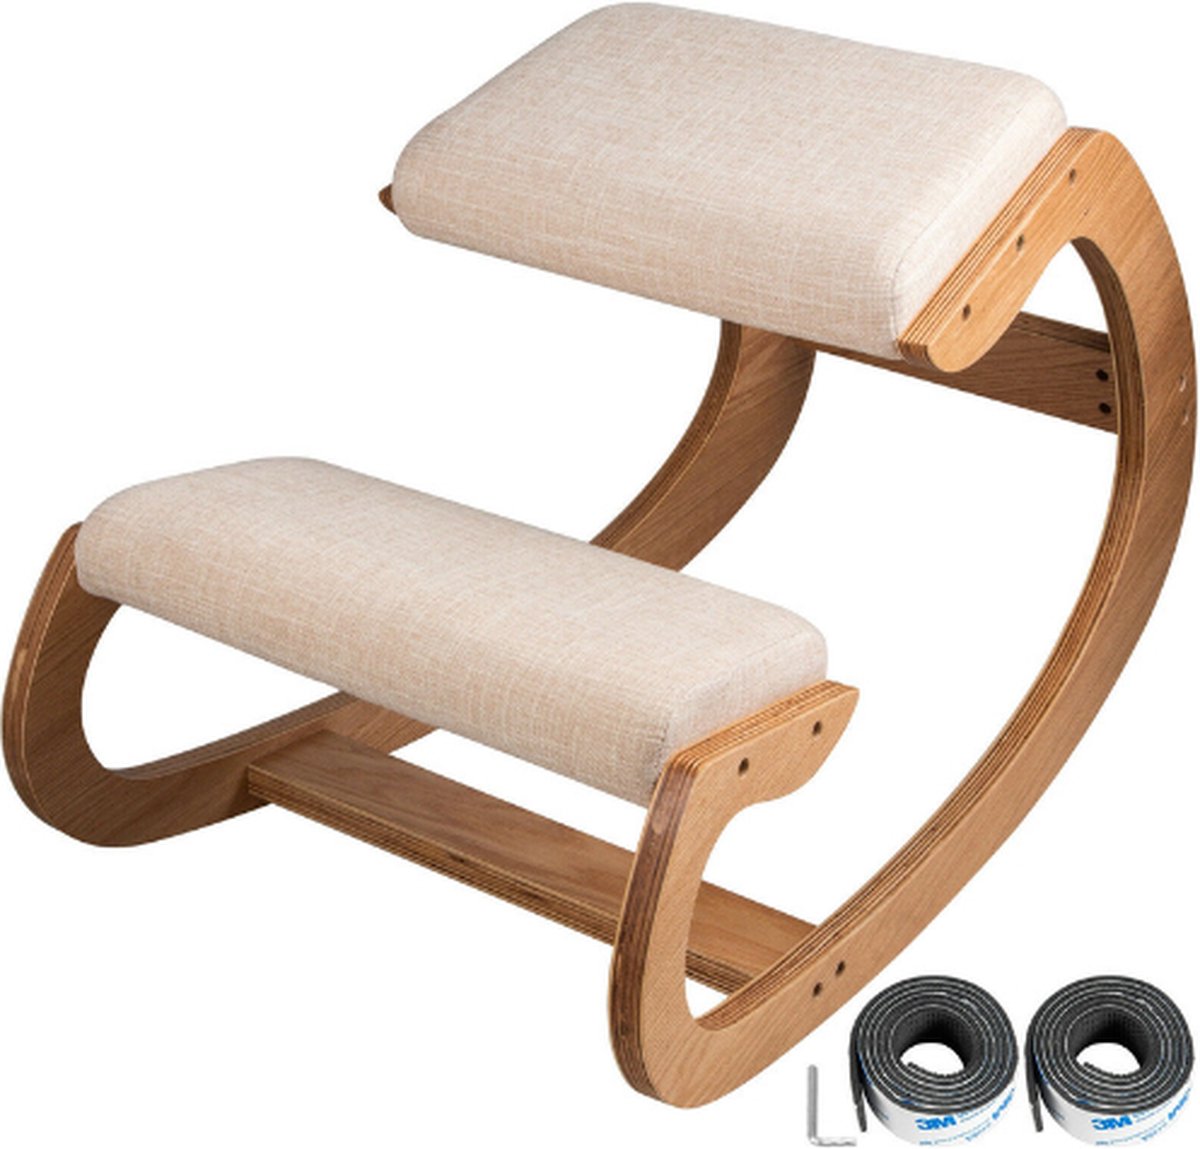 Reta Ergonomische Kniestoel - Nordic Design - Beige - Goede Lichaamshouding - Comfortabel - Schommelstoel - Berkenhout - Bentwood Craft - Bureaustoel